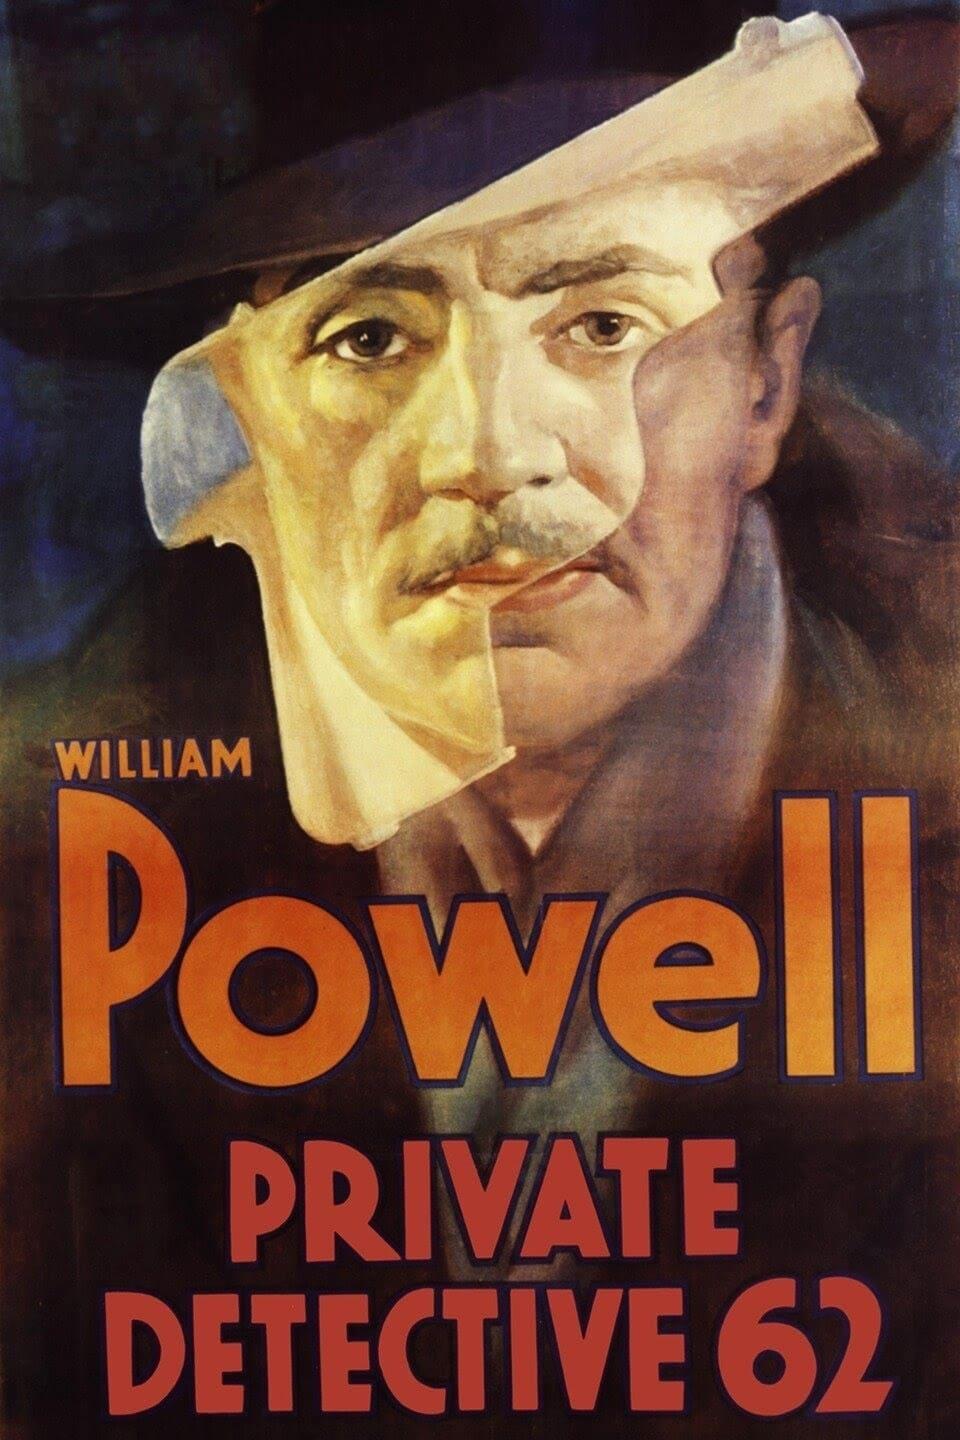 Private Detective 62 poster